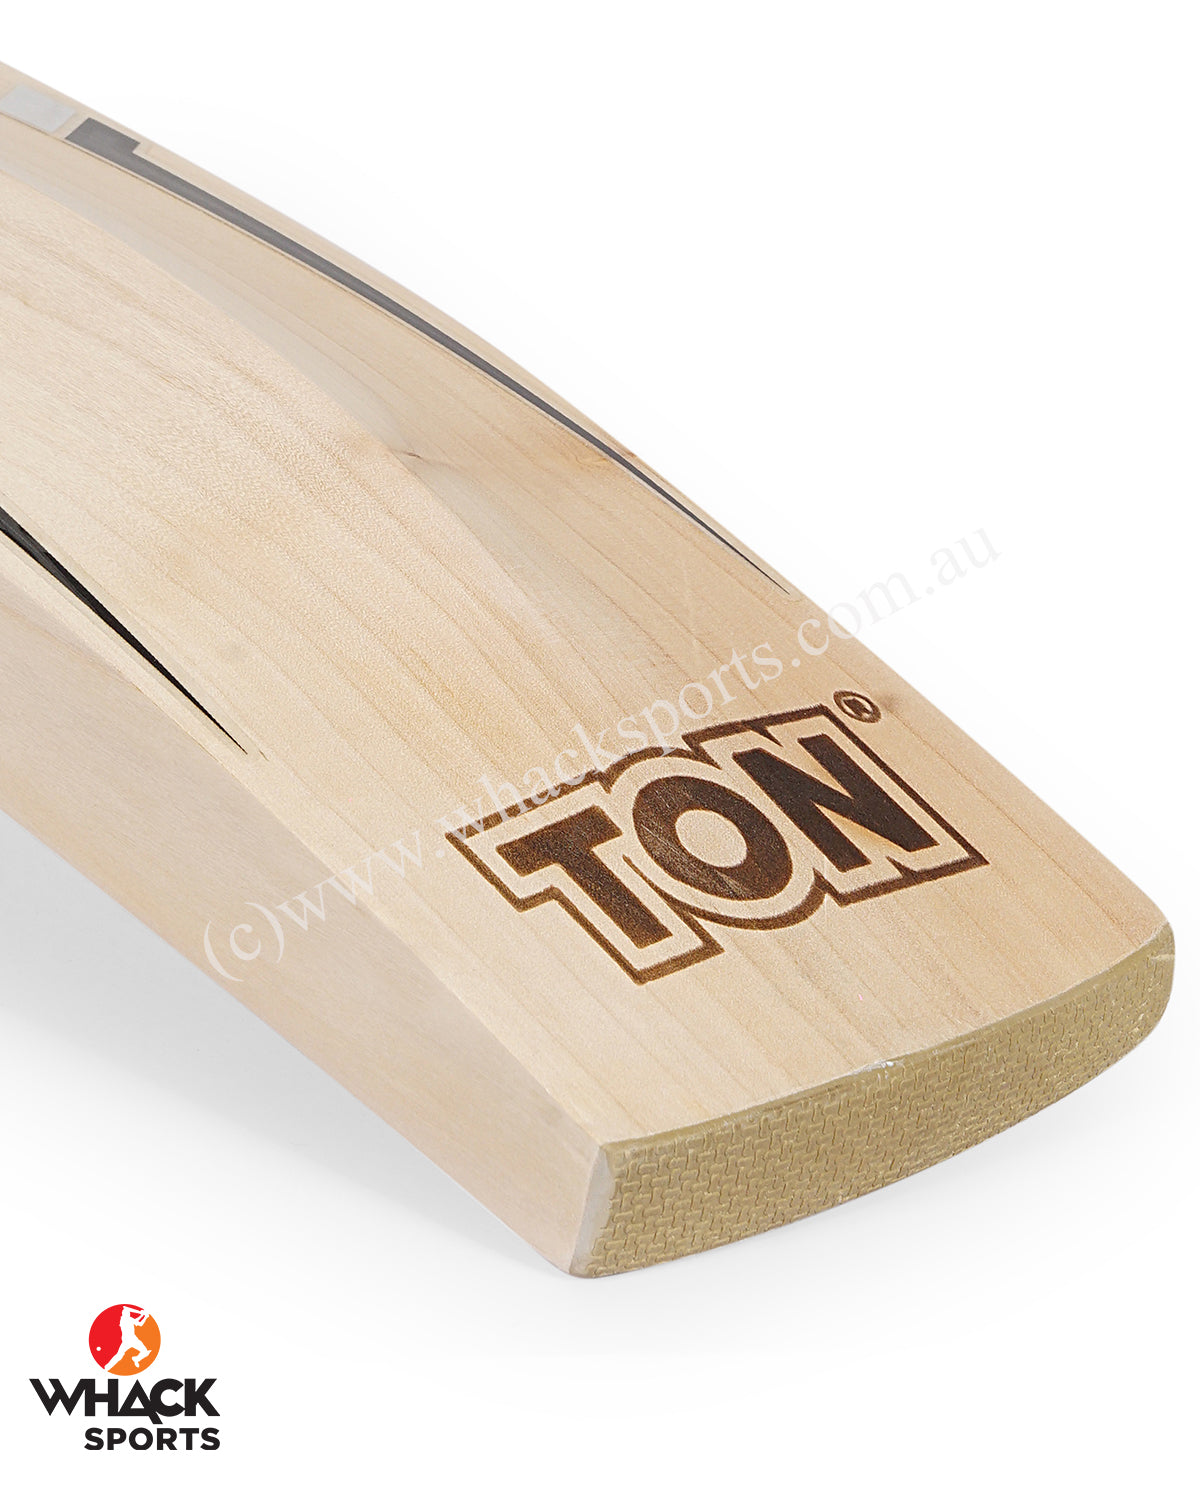 TON Silver Edition, TON English Willow Cricket Bats